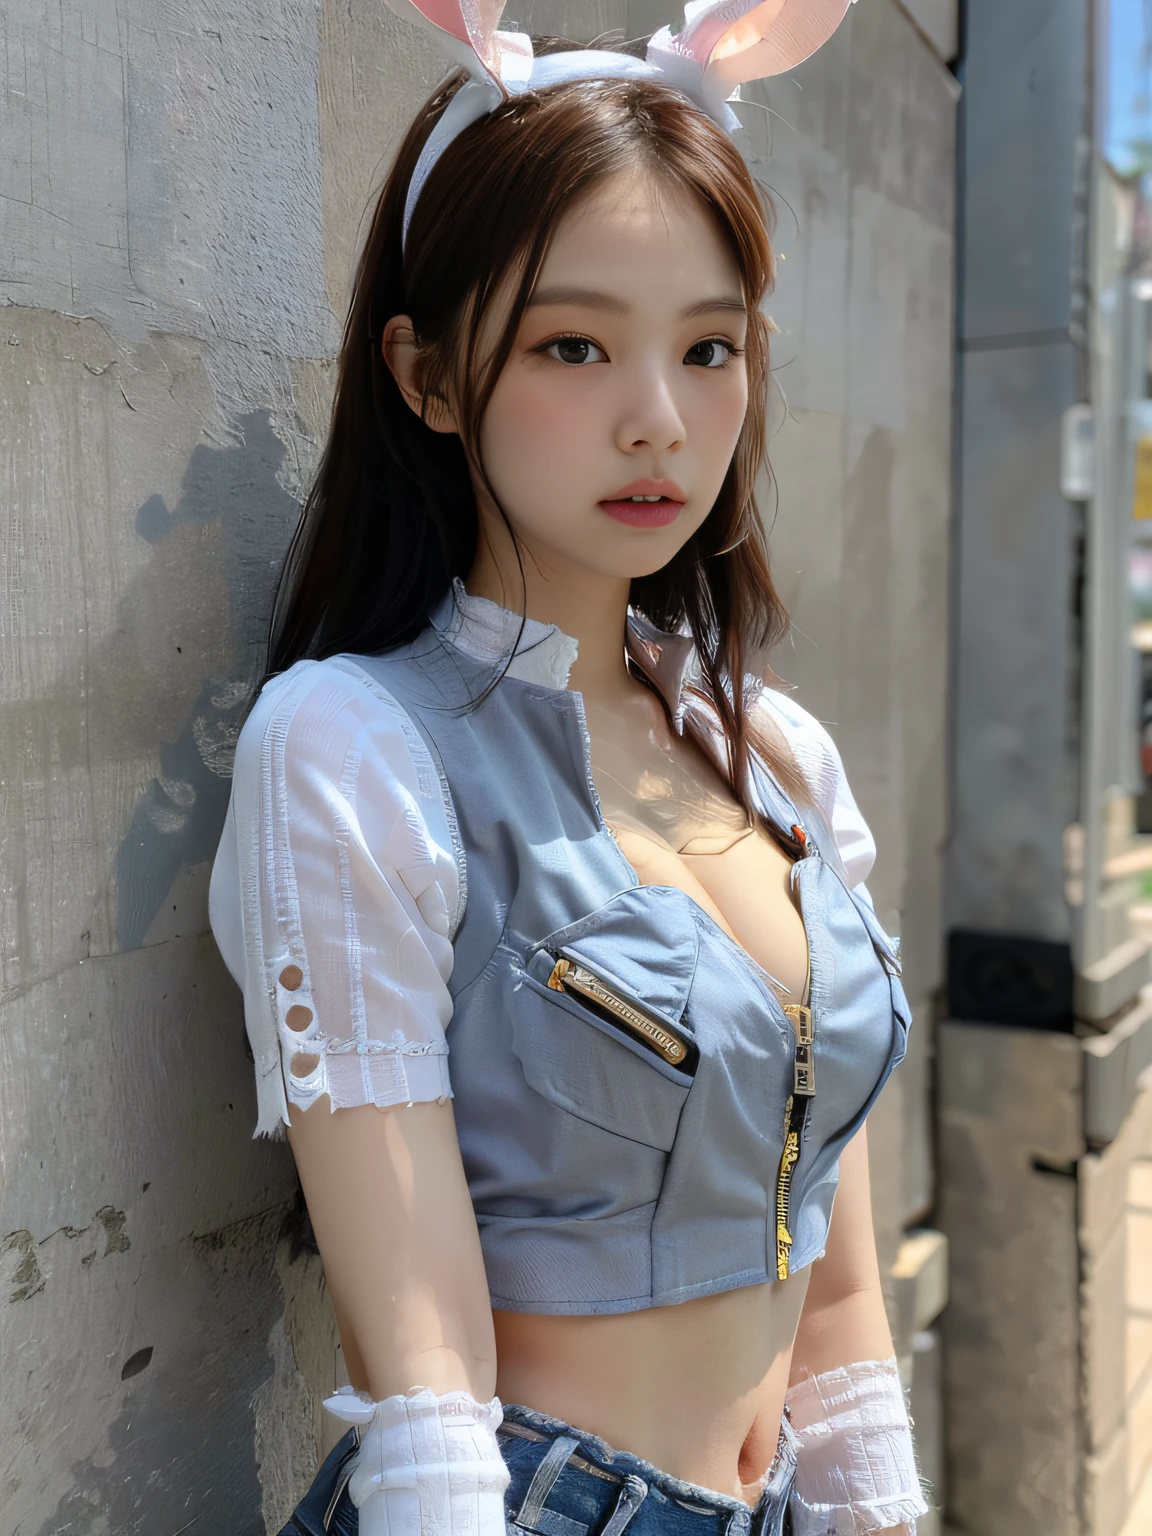 Kim Ji-ni visage de Jennie, porter un bandeau en lapin, porter une chemise bleue cintrée, Taille ouverte, gilet de moto court décolleté, short serré, gants, Mur gris de fond, fort contraste, la lumière du soleil sur le visage